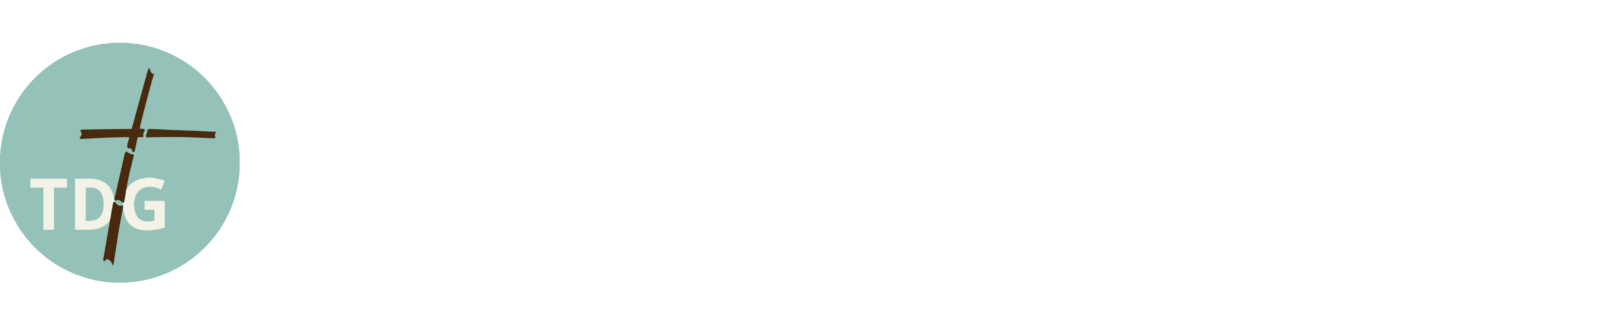 Thai-Deutsche Gemeinde Chiang Mai